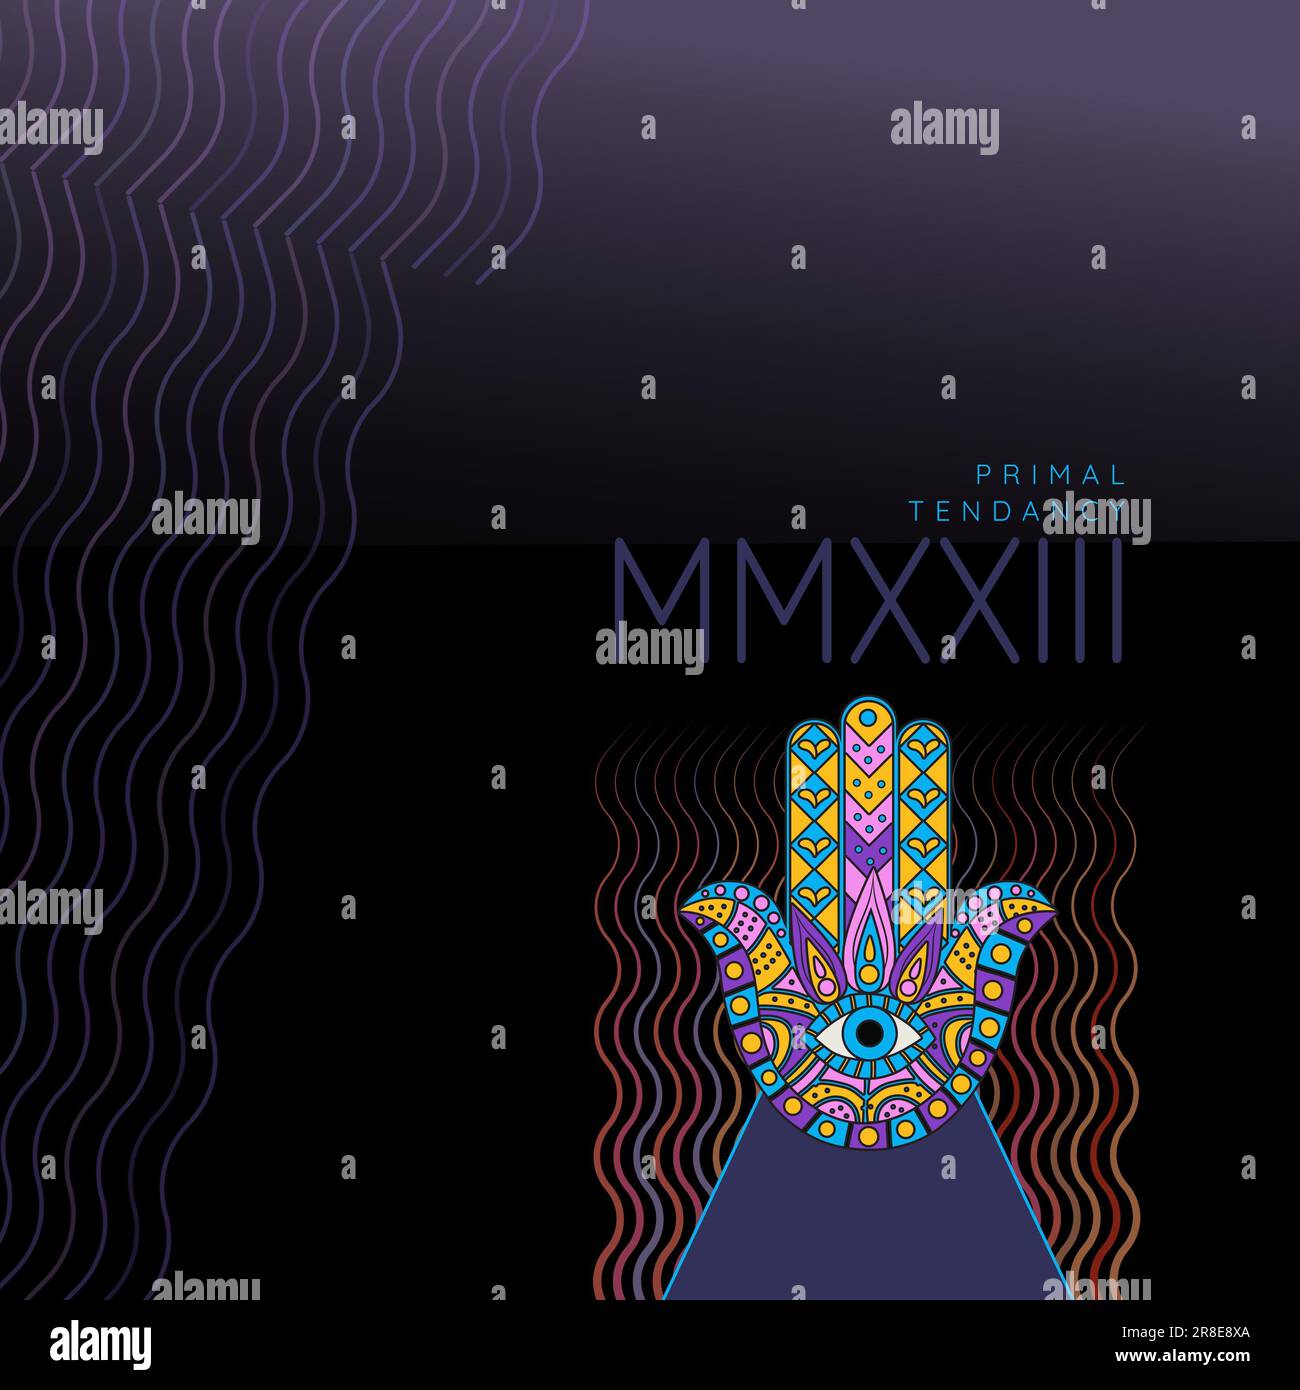 Darstellung der Urtendanz mmxxii mit Wellenmustern und Hand mit bunten Designs Stockfoto